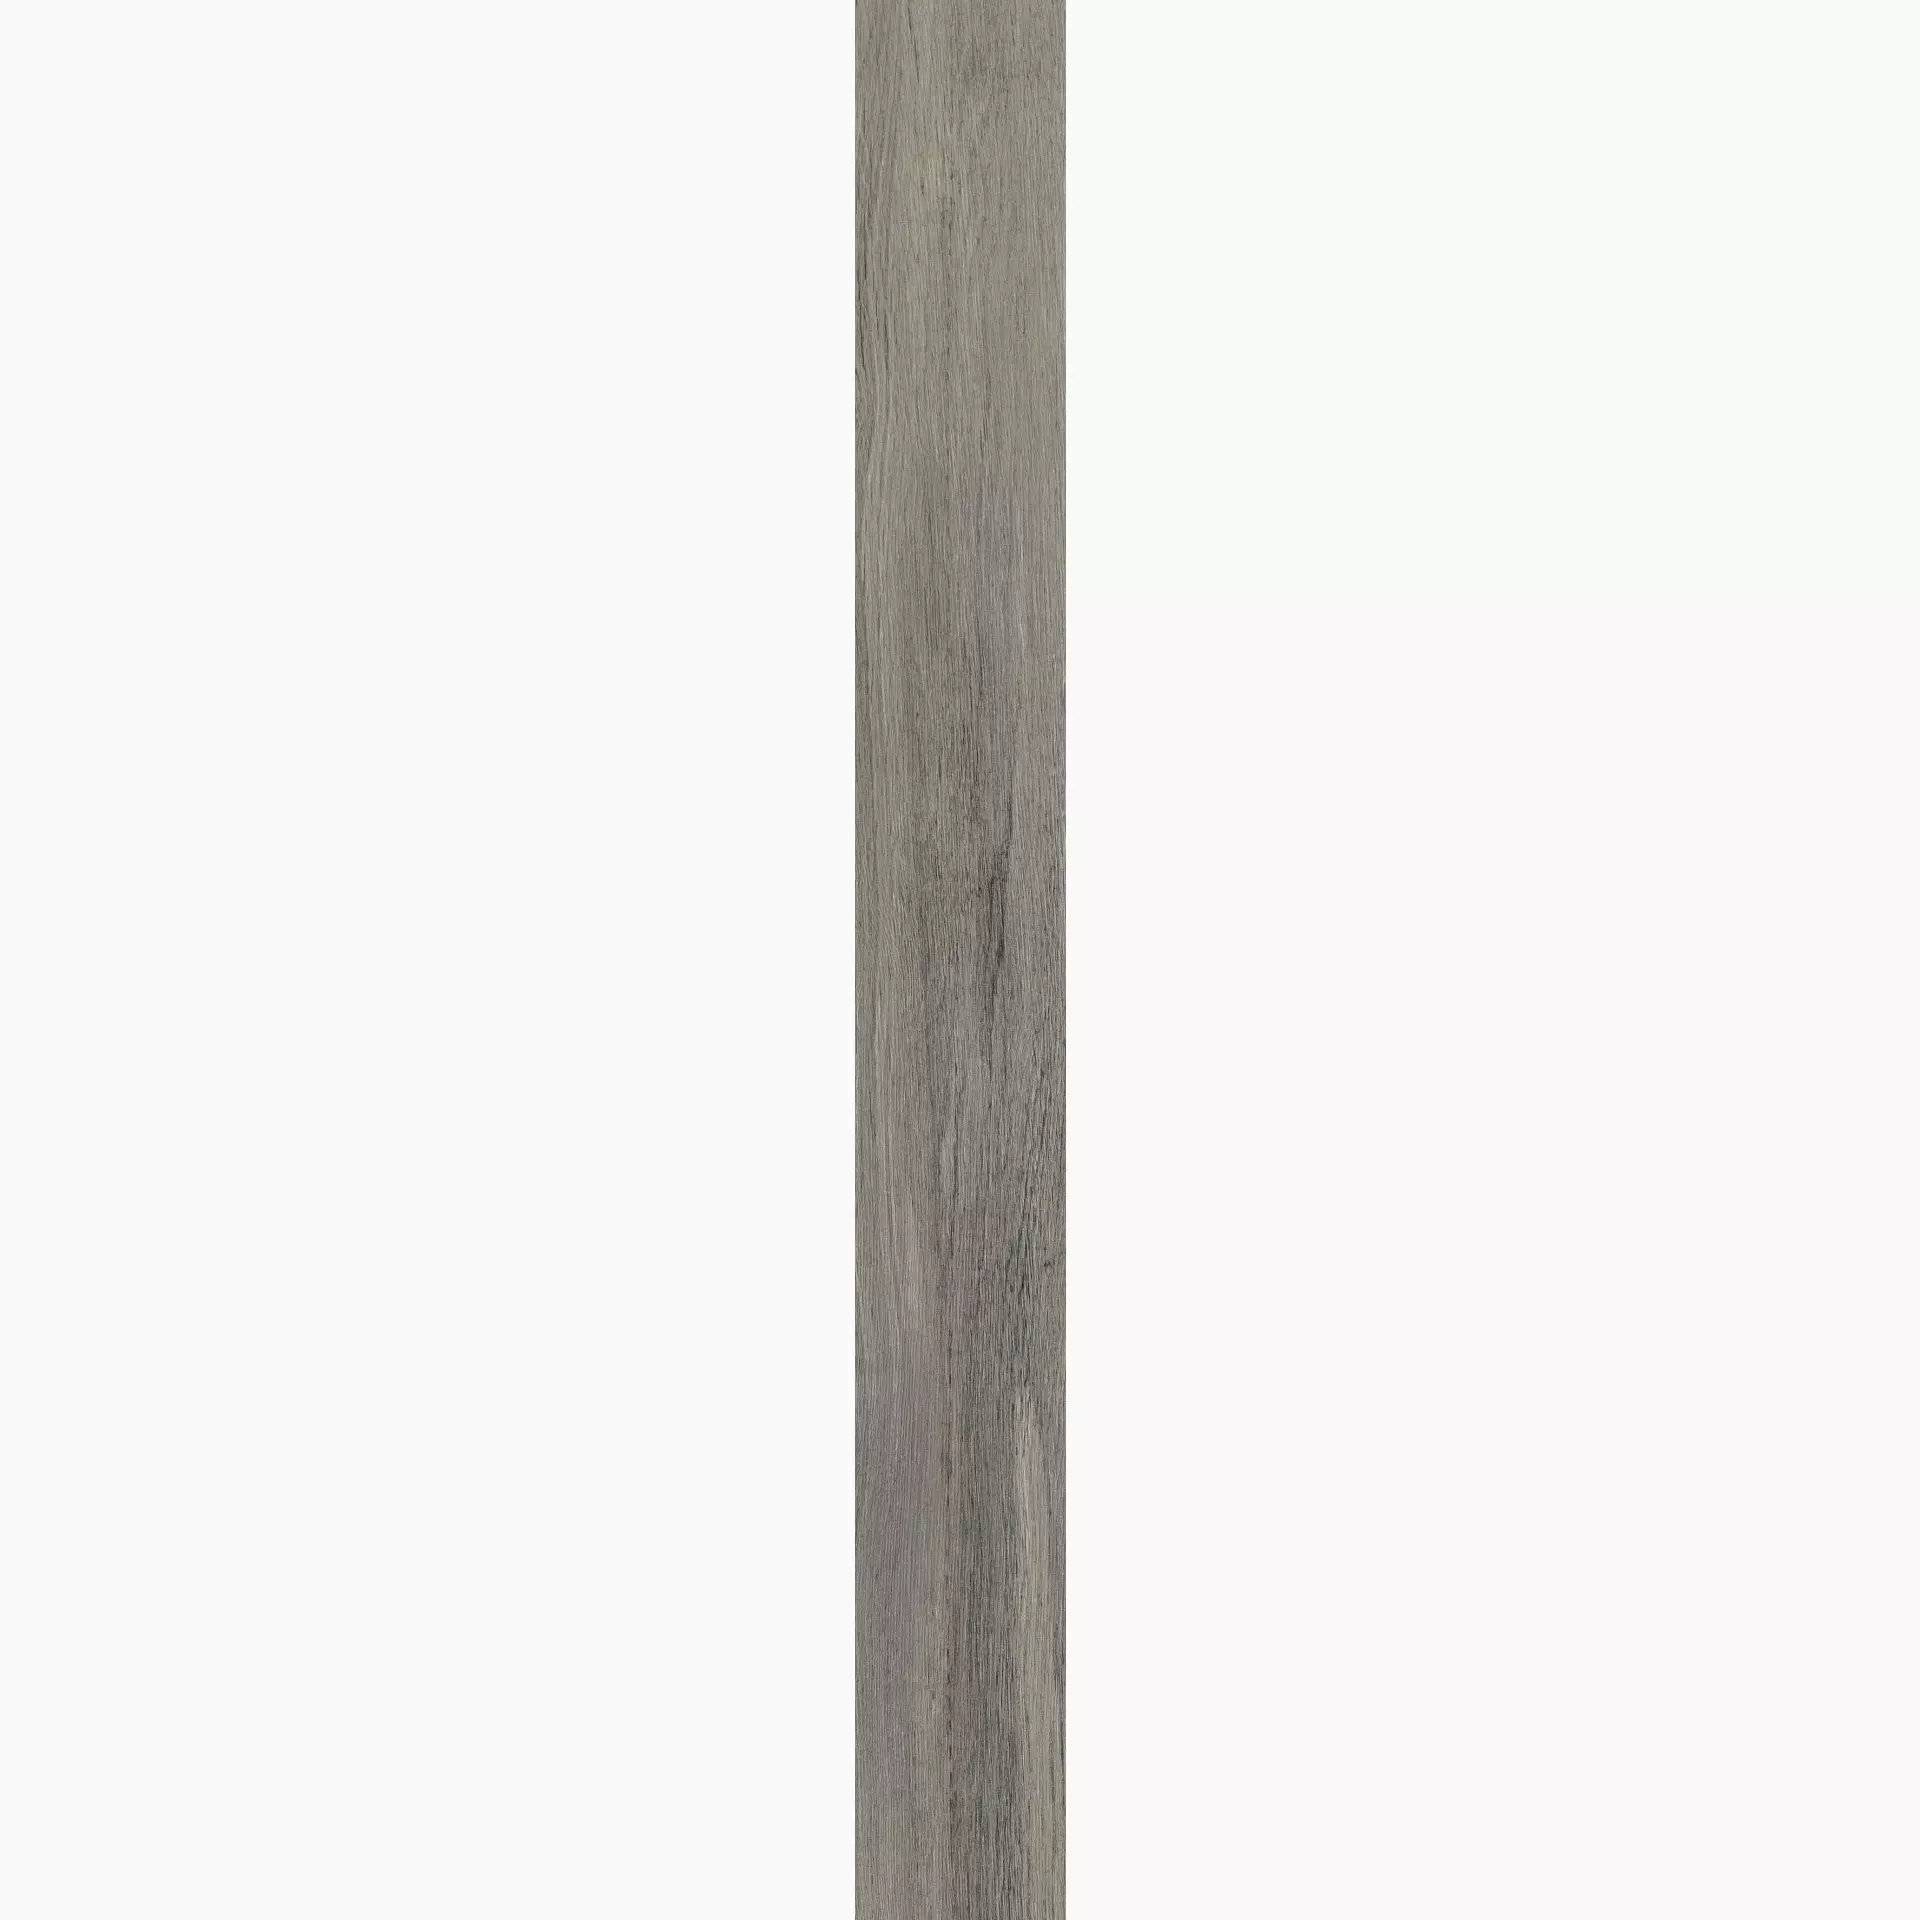 Florim Planches De Rex Perle Naturale – Matt Perle 755701 matt natur 20x180cm rektifiziert 9mm